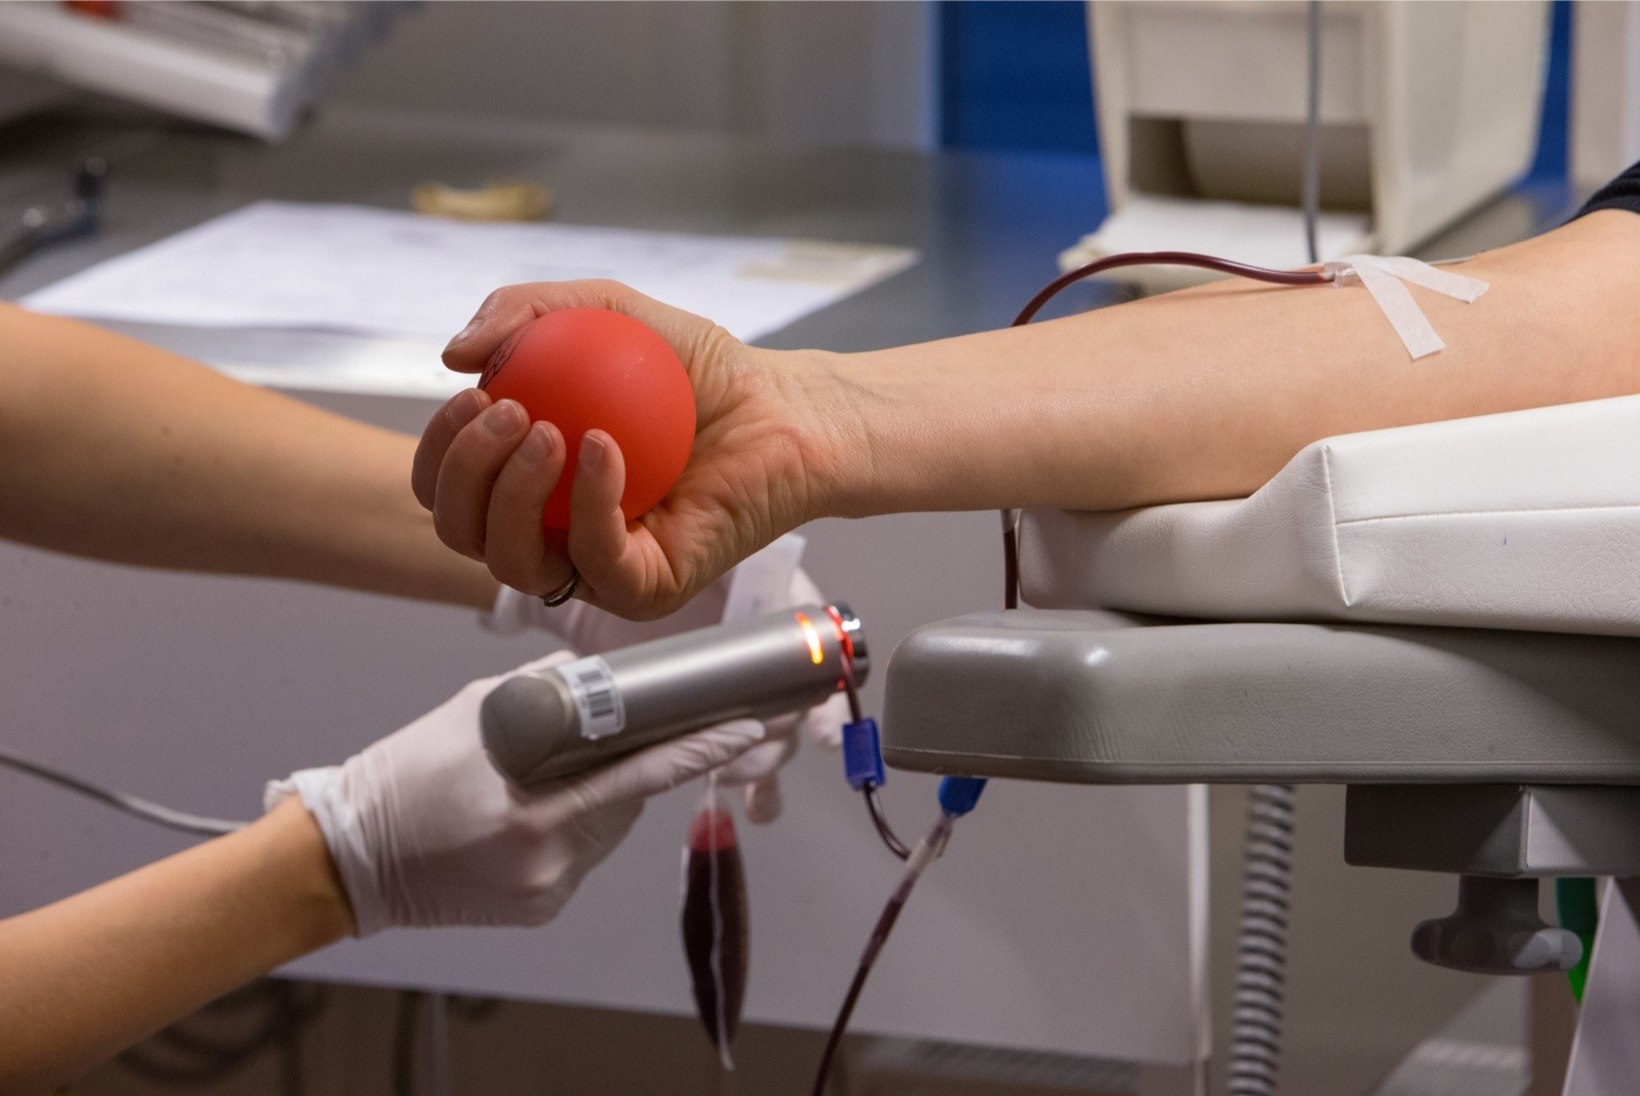 PUNASE ELUMAHLA LÄTETEL: veredoonoreid jääb aina vähemaks, aga arstid ei näe põhjust muretseda!